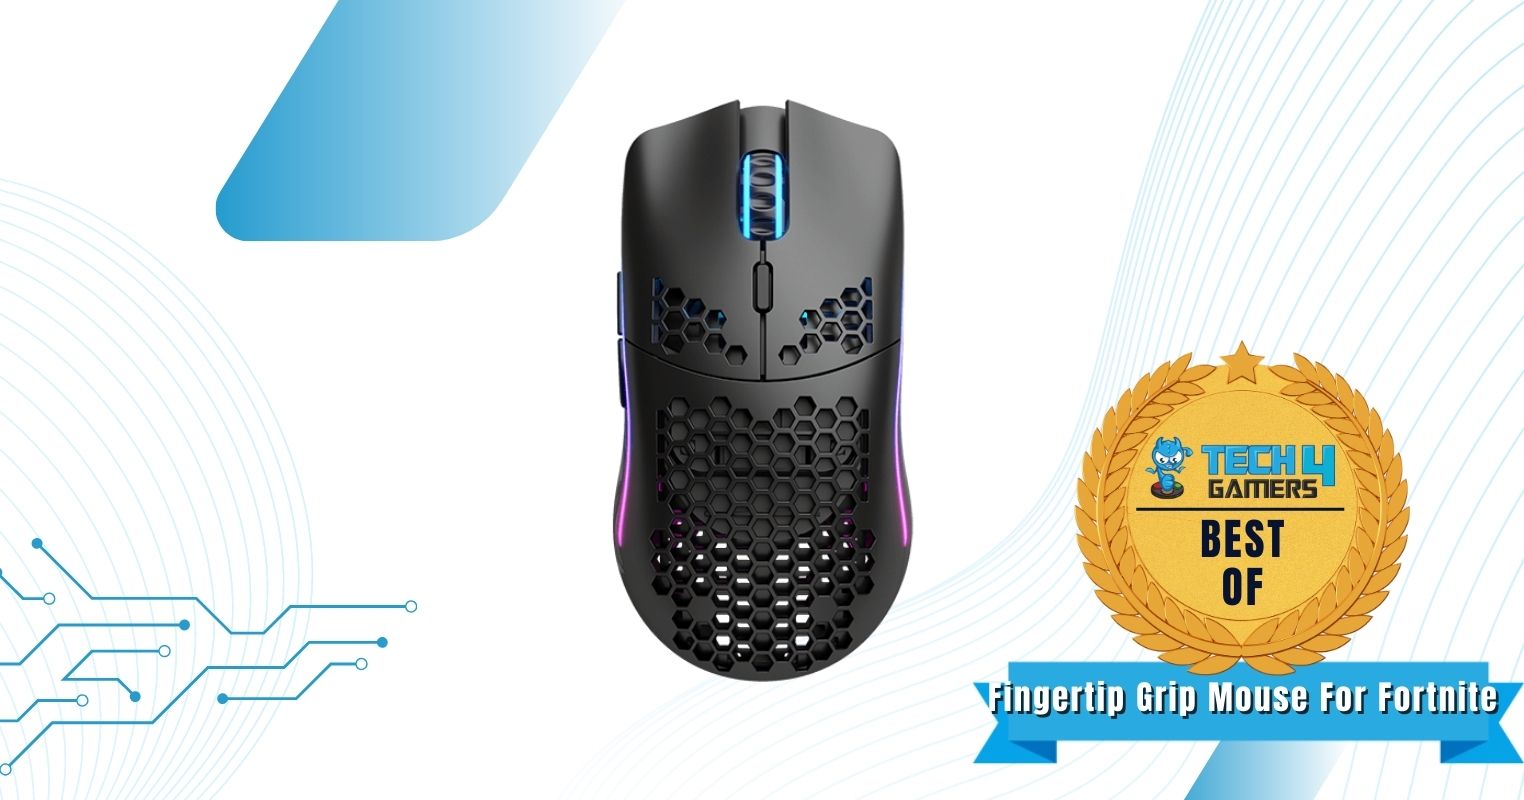 Best fingertip grip mouse for Fortnite